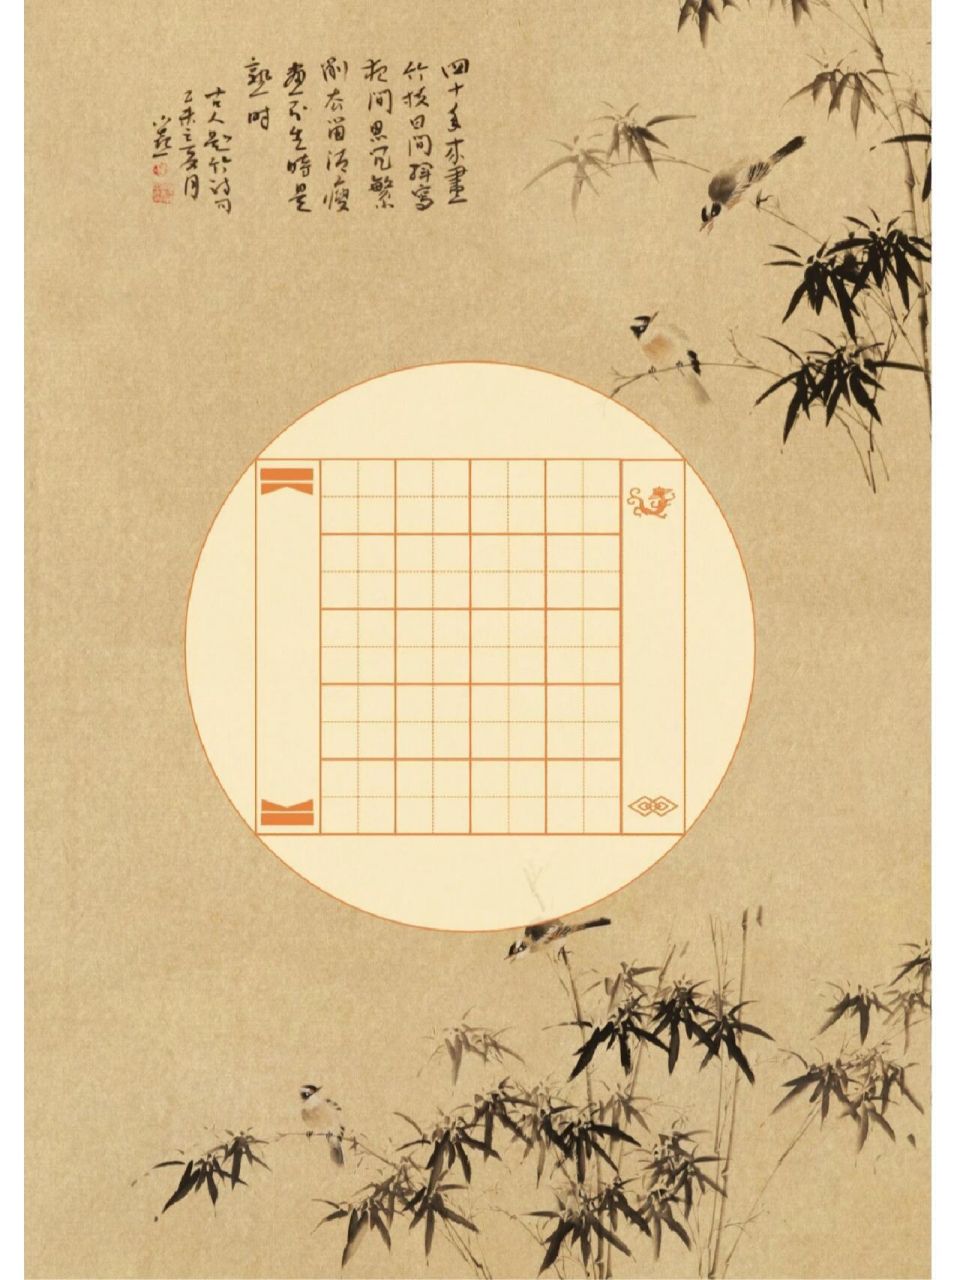 分享一波中国风硬笔书法模板,古诗词作品练习纸